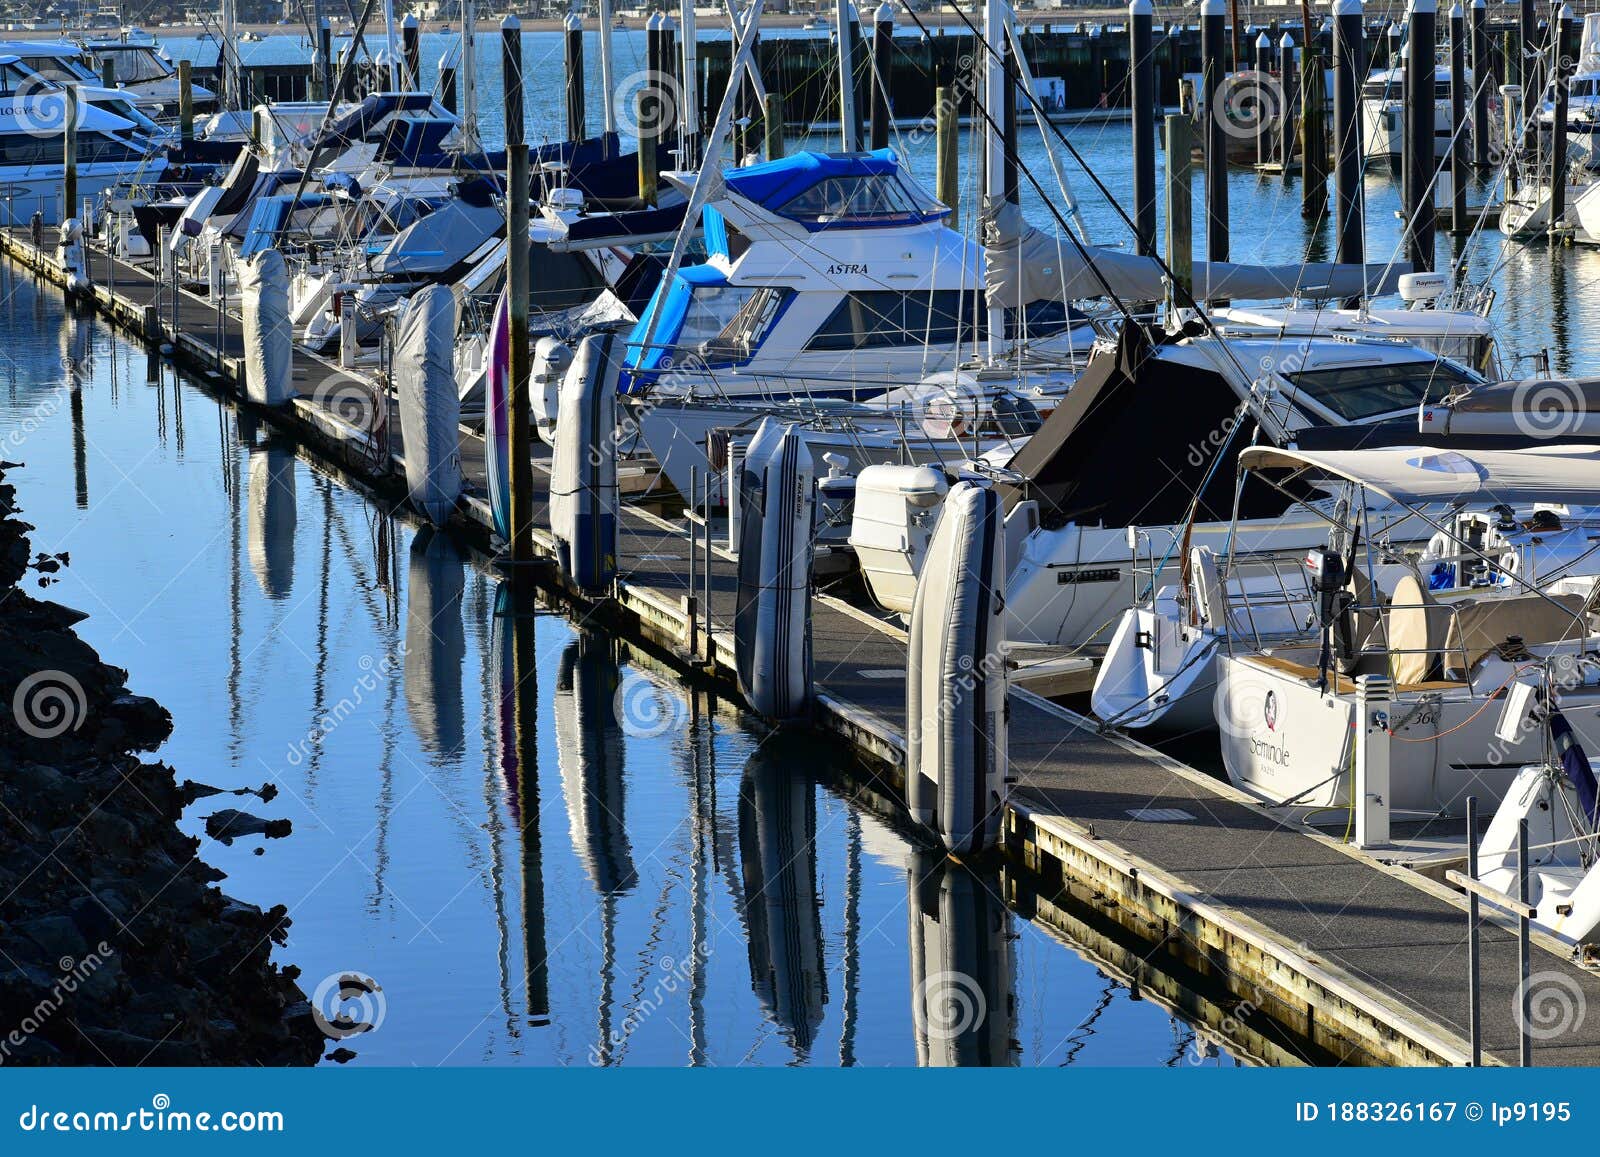 Half Moon Bay Marina and Boats Editorial Photography - Image of ...